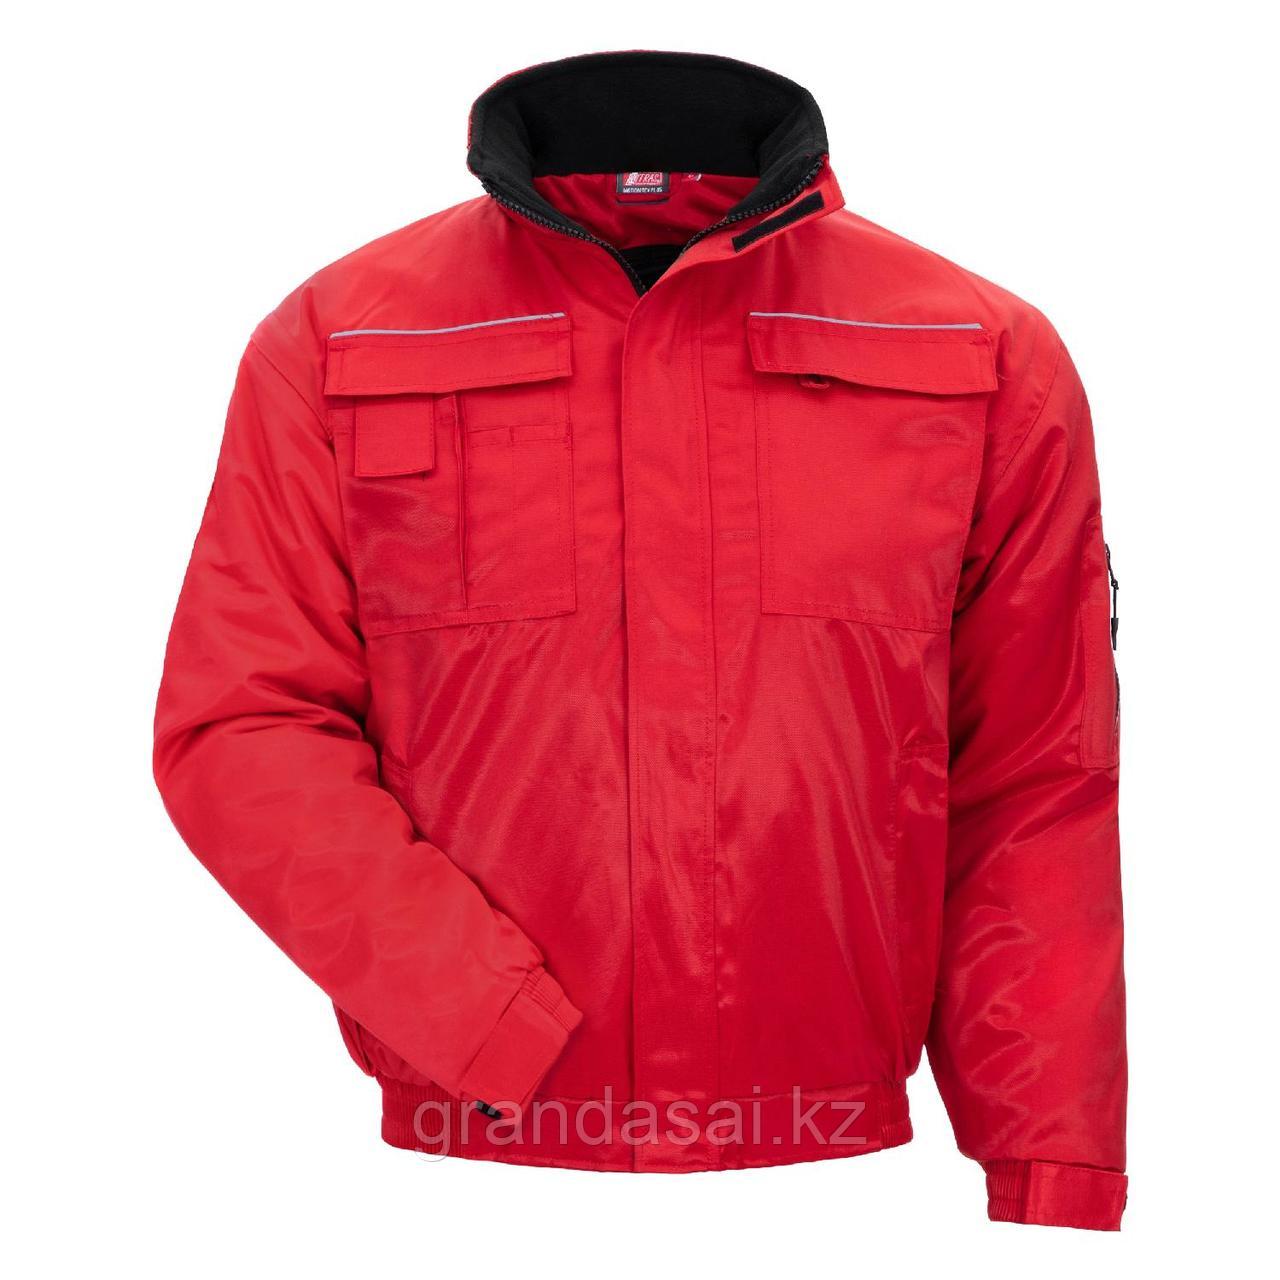 NITRAS 7122, куртка куртка пилота, красный, водоотталкивающее HIT-покрытие, съёмные рукава.